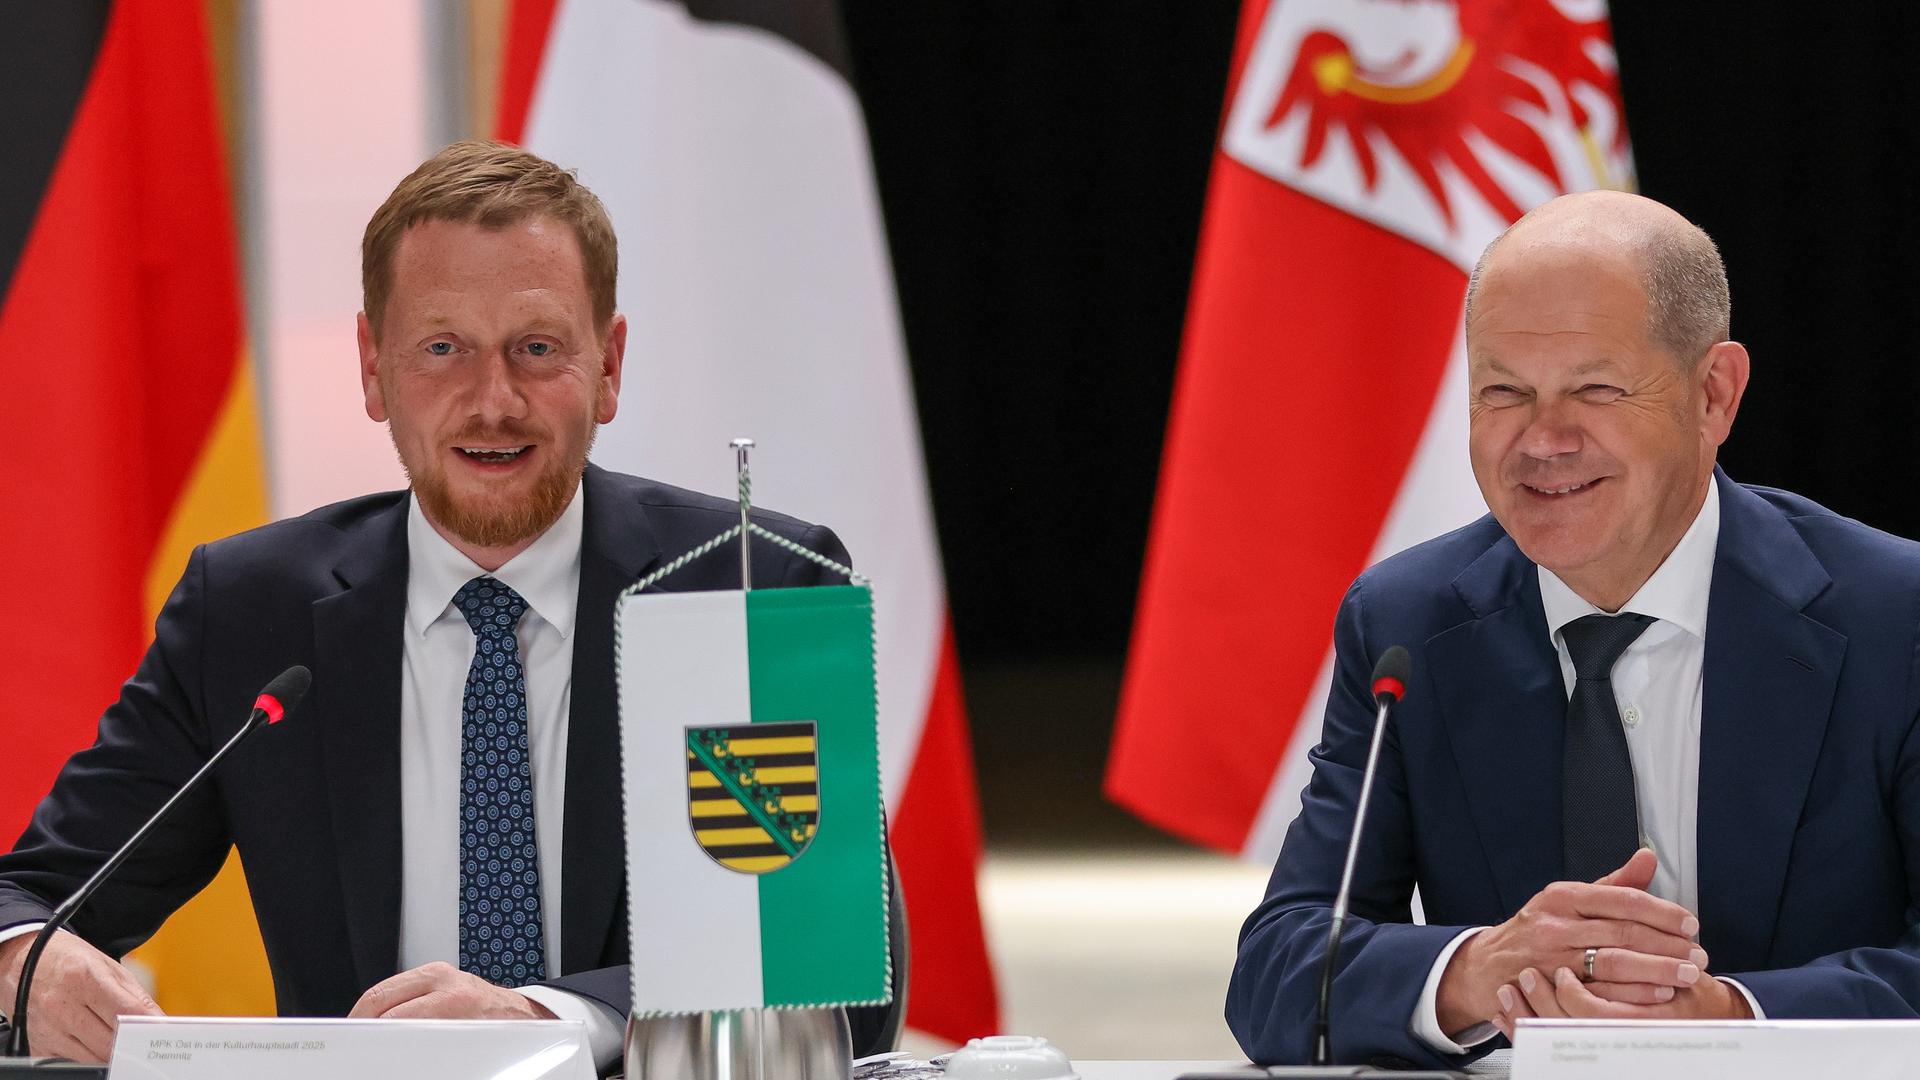 Michael Kretschmer (l, CDU), Ministerpräsident von Sachsen, und Bundeskanzler Olaf Scholz (SPD) sitzen bei der Tagung der Ost-Ministerpräsidenten. Sie lächeln in die Kamera.